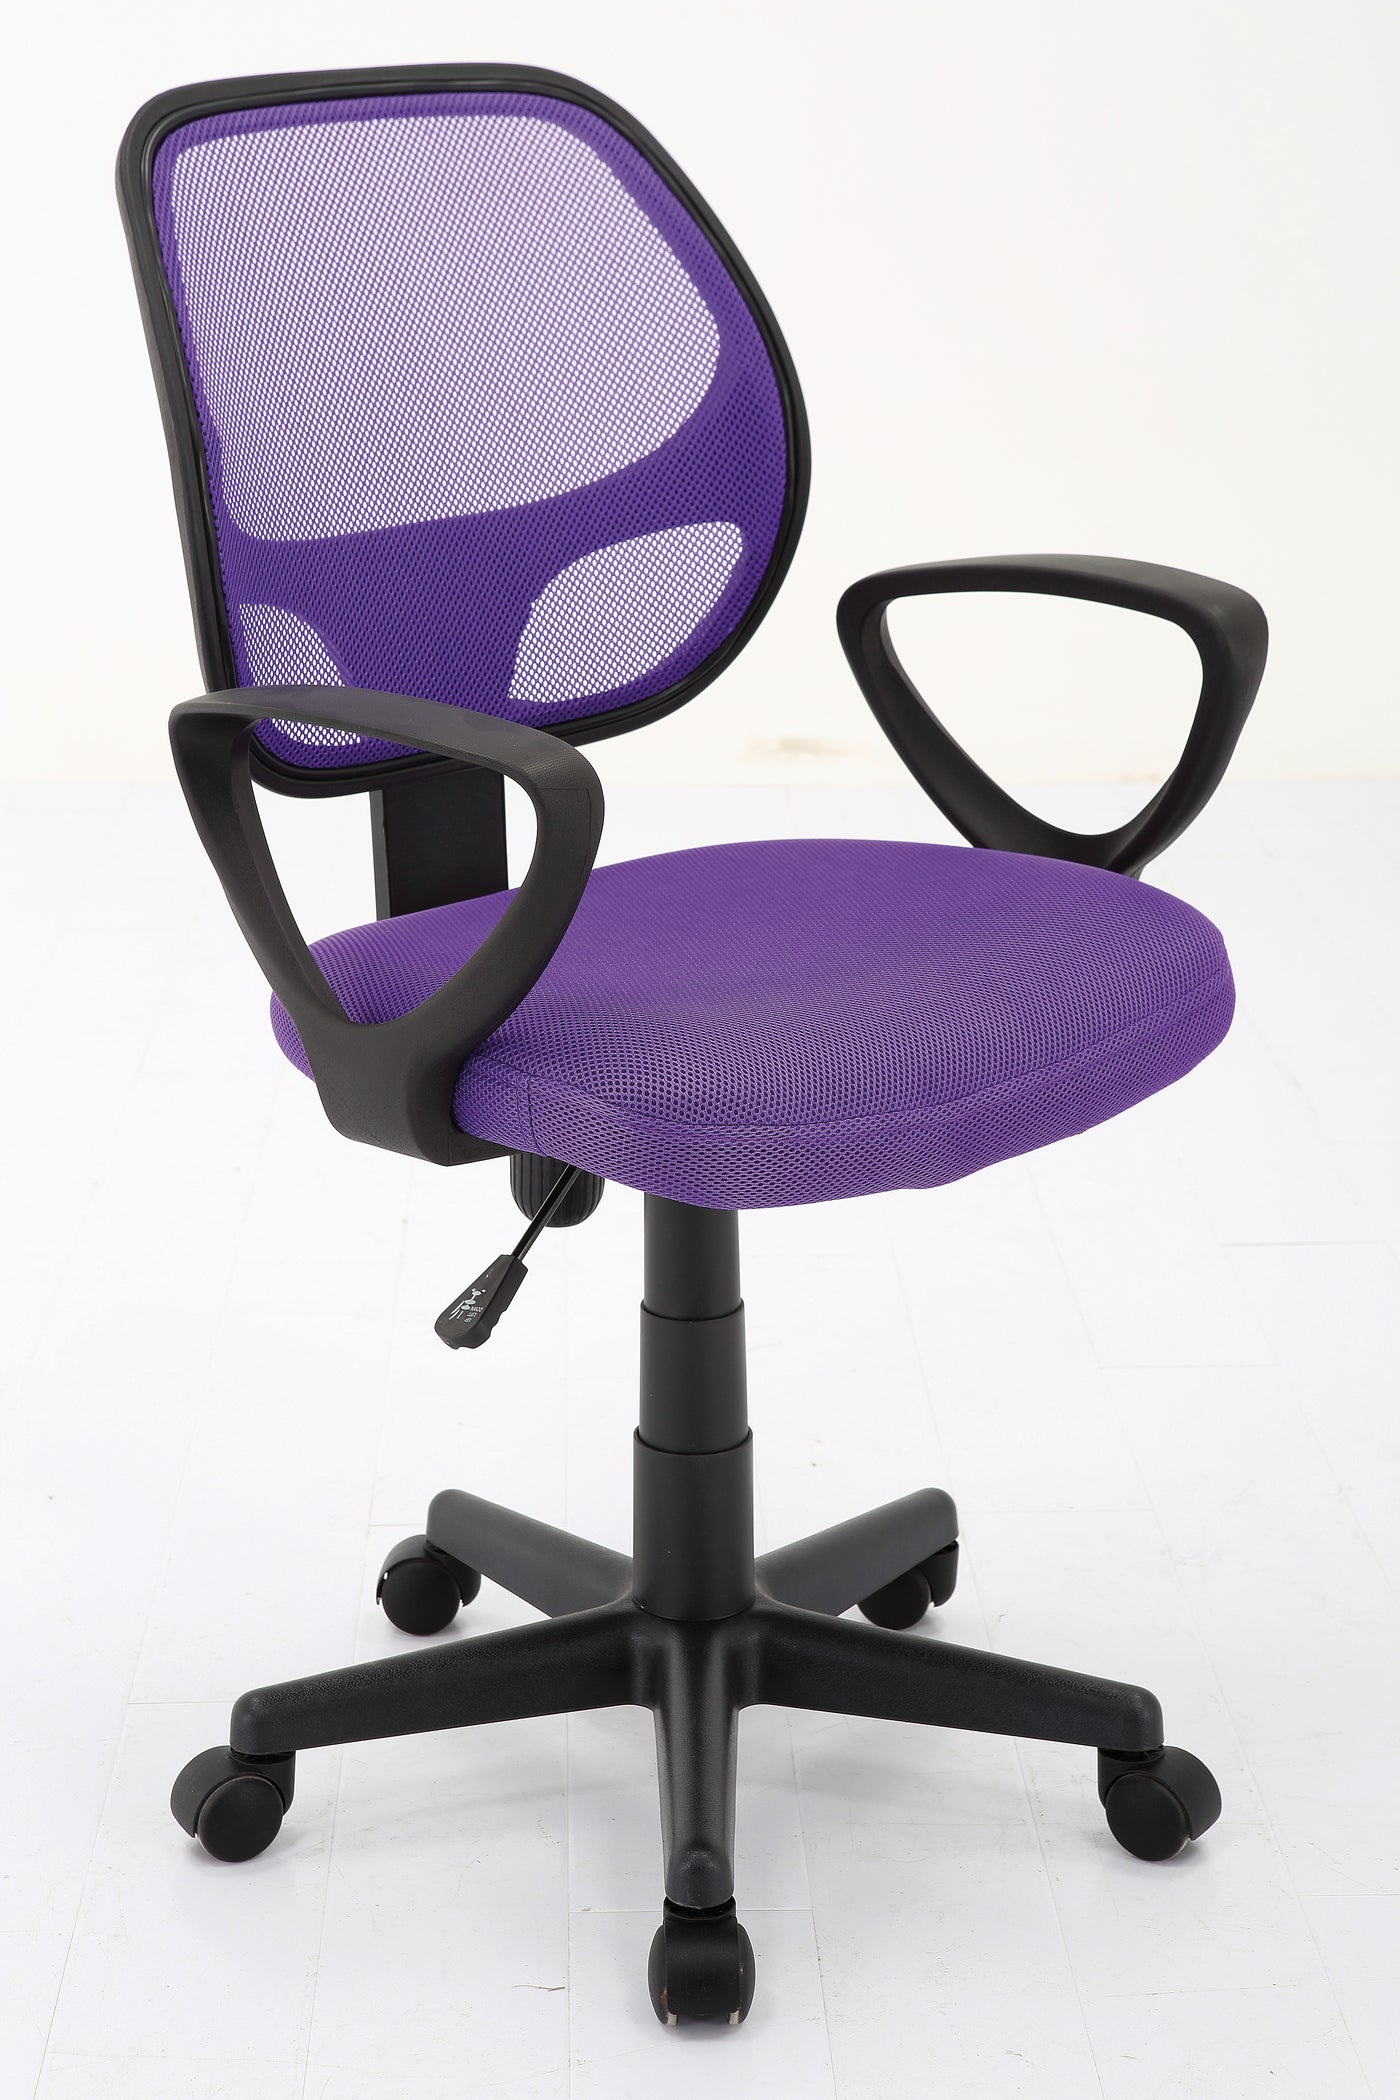 Paarse ergonomische bureaustoel met mesh rugleuning en verstelbare hoogte. Moderne stoel met armleuningen en wielen, ideaal voor comfort en ondersteuning in een kantoor of thuiswerkplek.